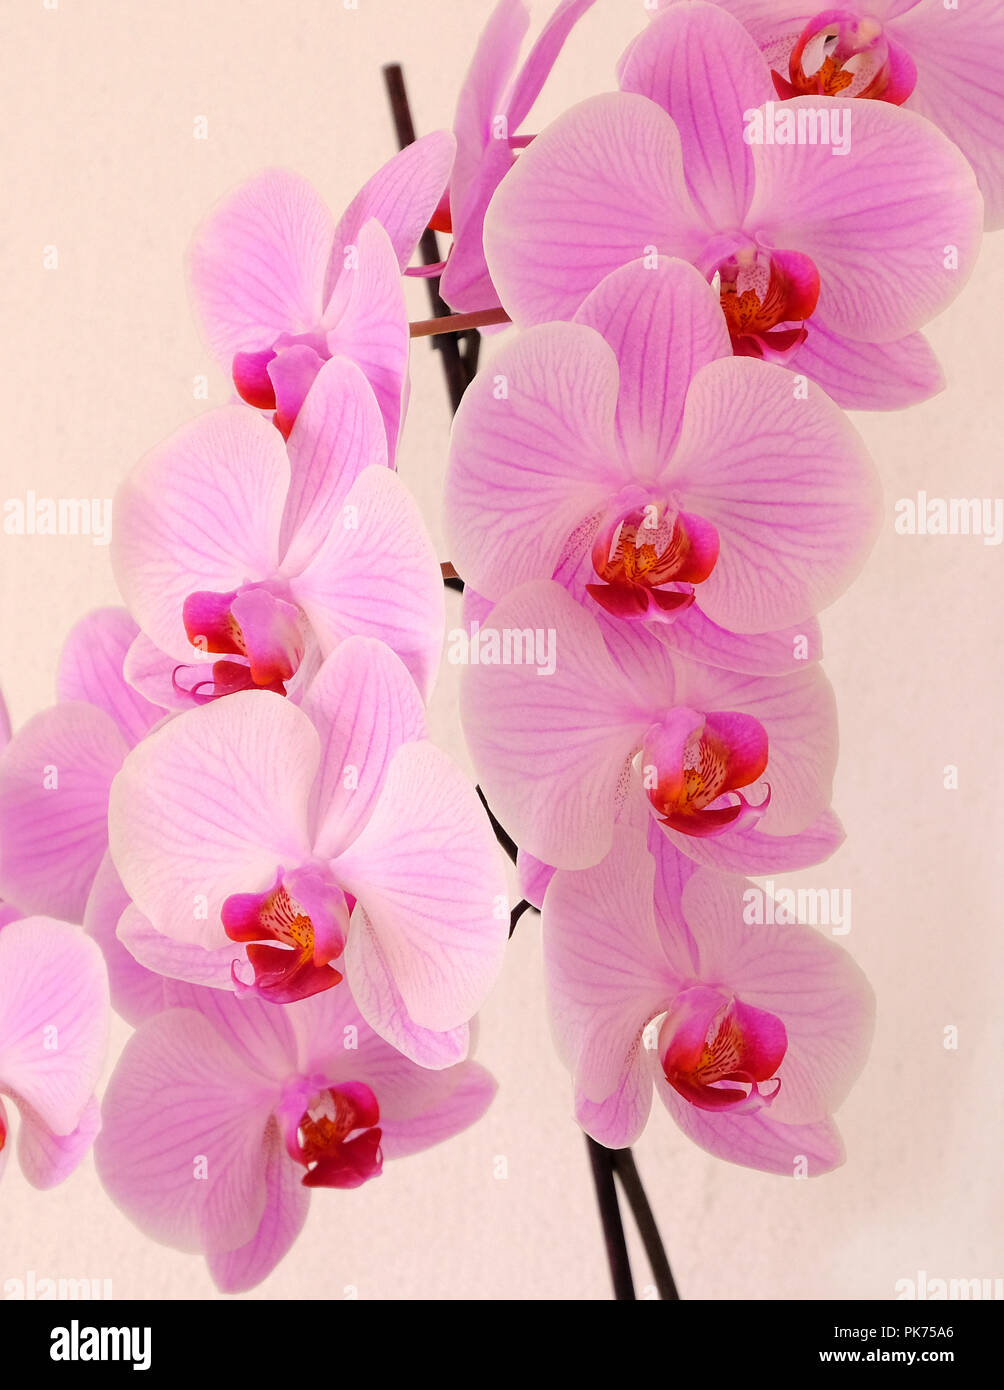 Grandes fleurs de l'espèce d'Orchid on white background Banque D'Images